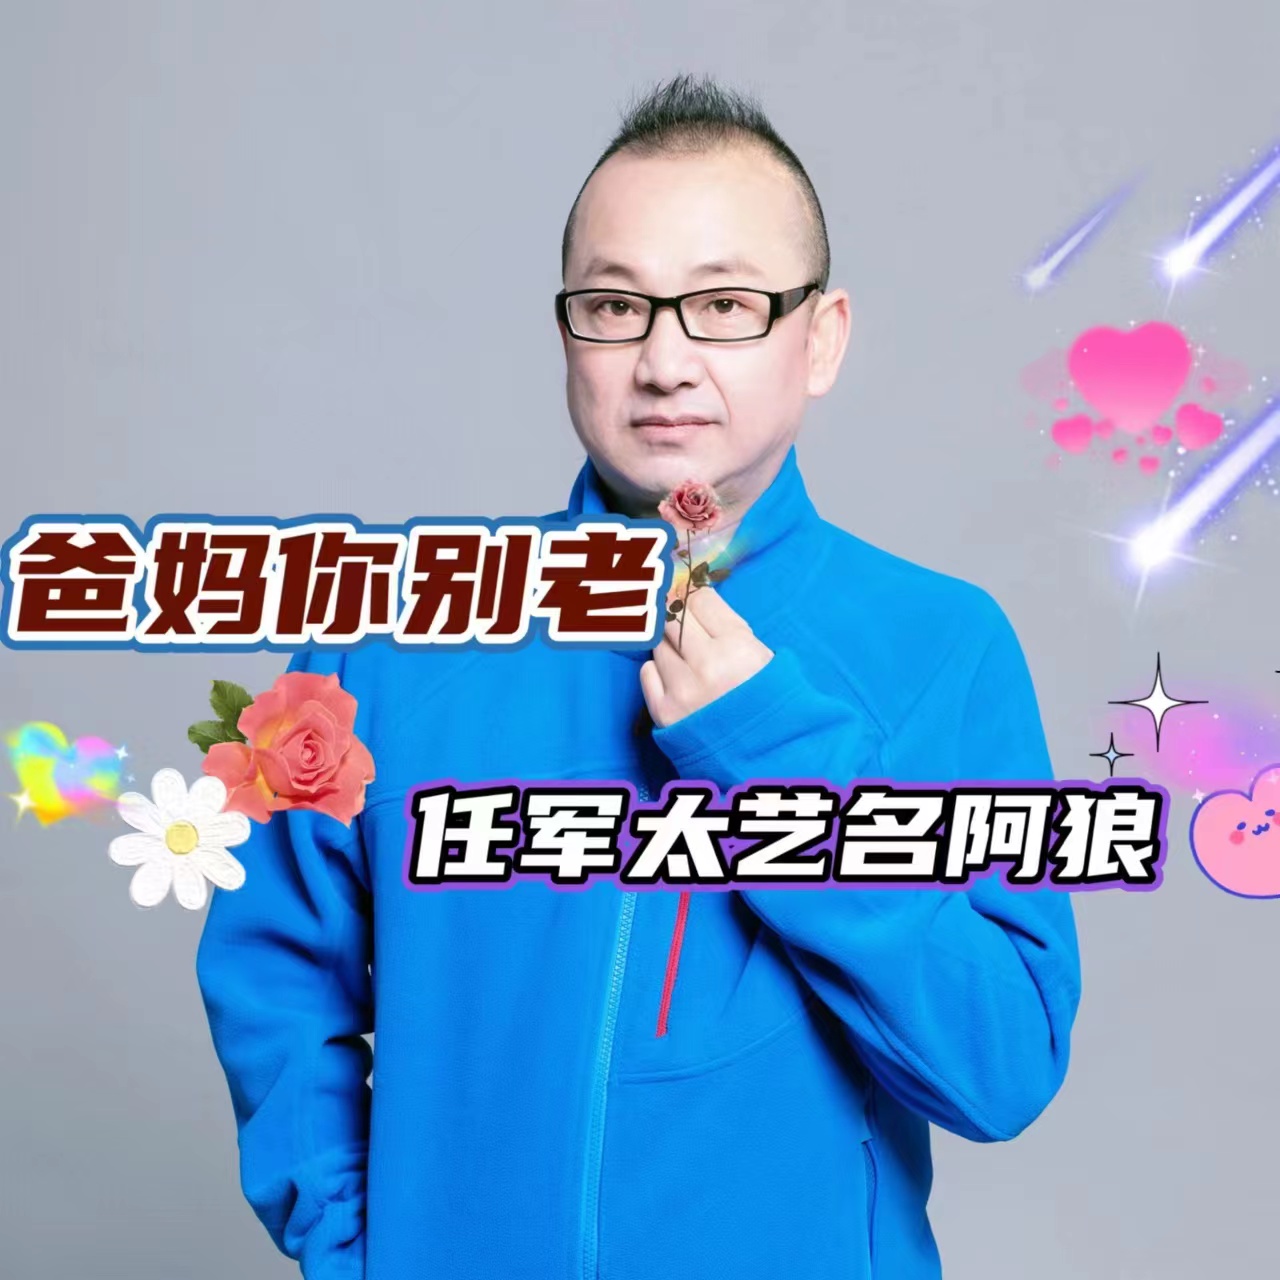 华语原创歌手任军太发行最新原创歌曲《爸妈你别老》致敬天下父母